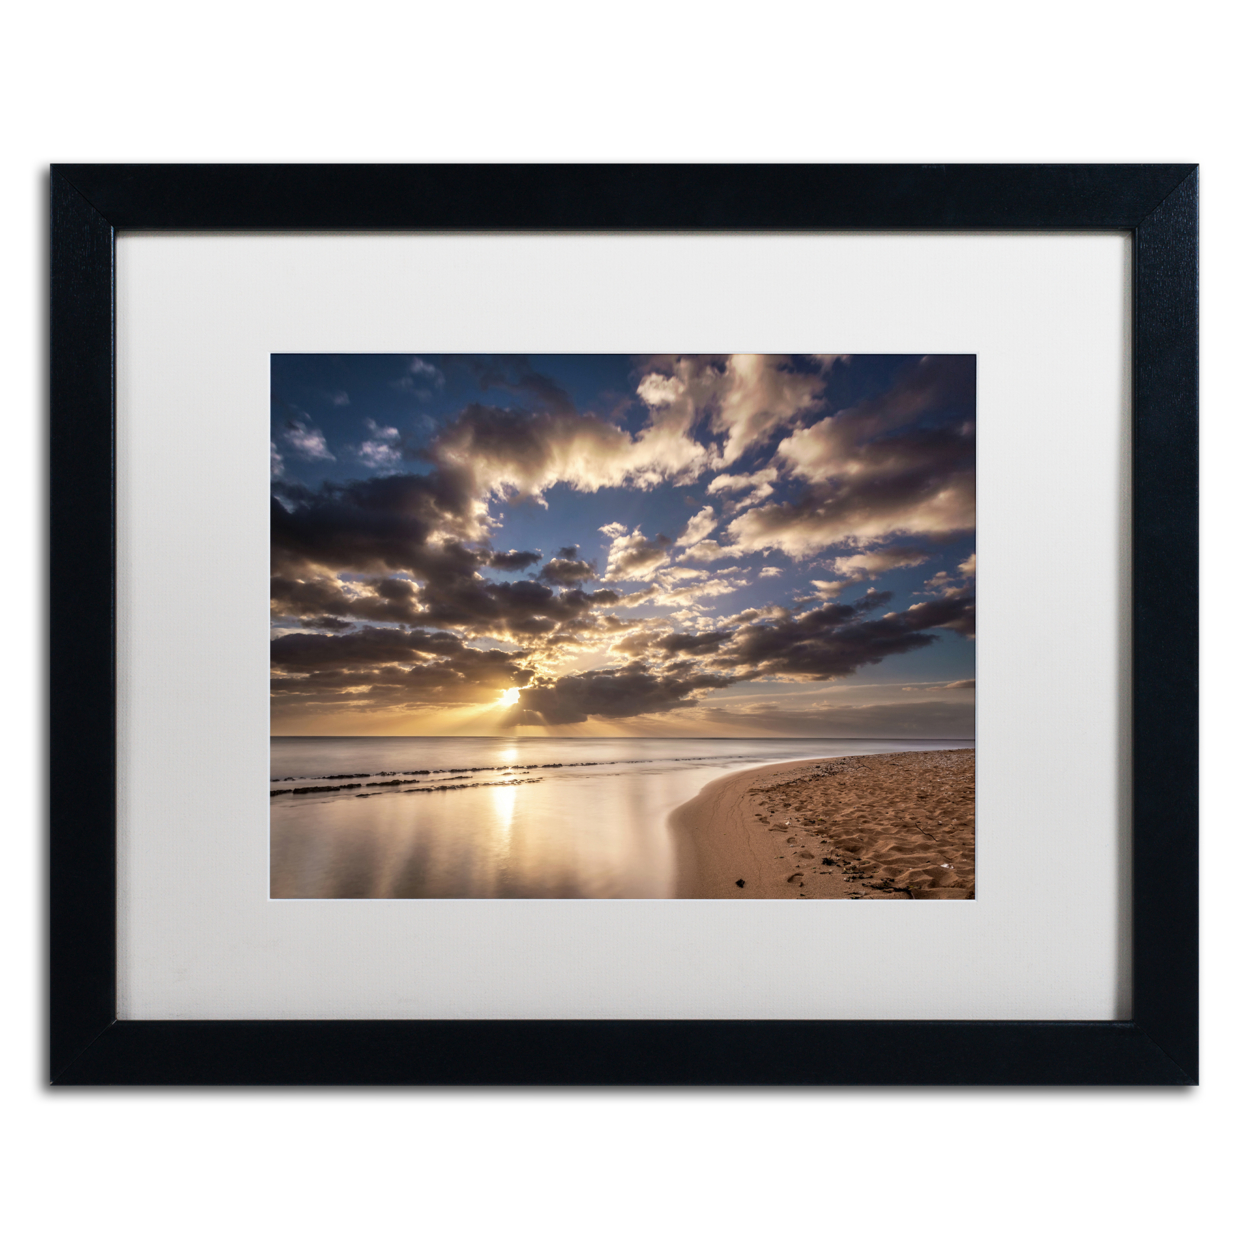 Pierre Leclerc 'Kauai Beach Sunrise' Black Wooden Framed Art 18 X 22 Inches